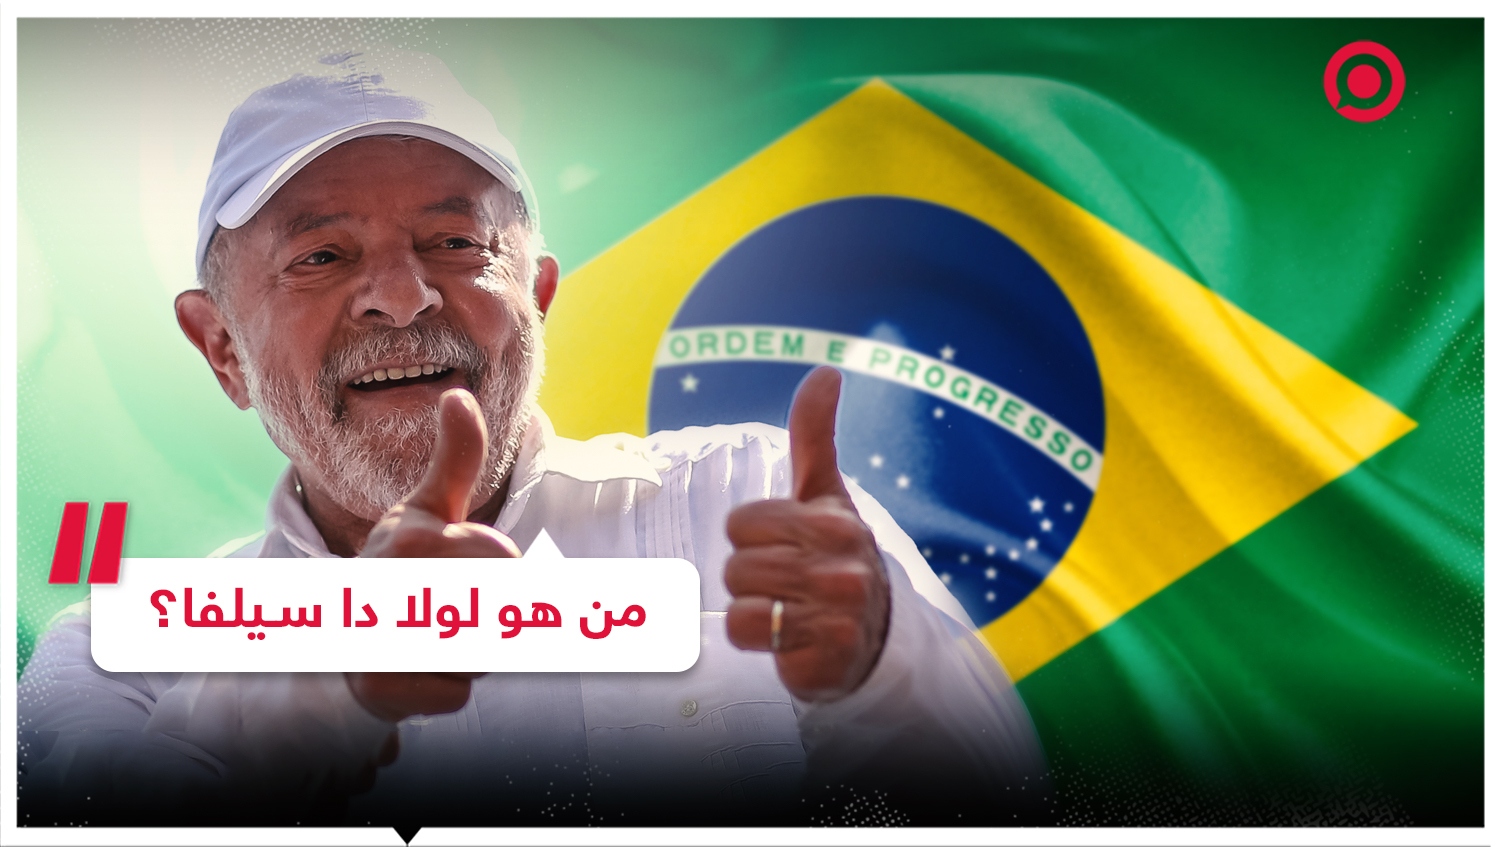 خرج من السجن إلى القصر.. تعرف على المسيرة الحافلة للرئيس البرازيلي المنتخب!